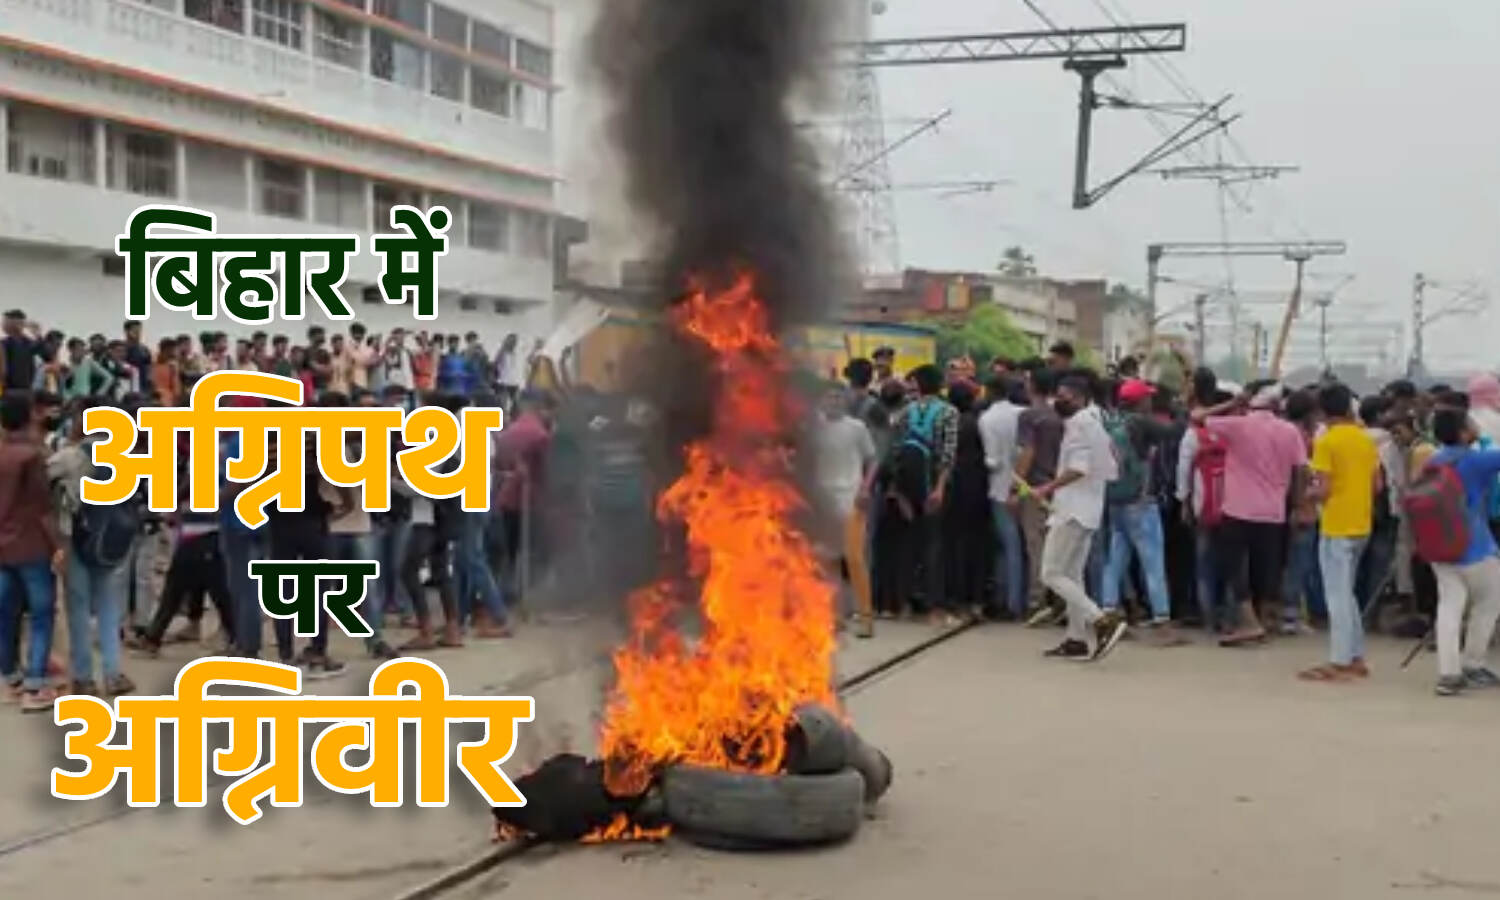 Agnipath Scheme Ki Agnipariksha : अग्निपथ के विरोध में जलने लगा बिहार, छपरा व कैमूर में ट्रेन फूंकी गई; आरा में प्रदर्शनकारियों पर दागे गए आंसू गैस के गोले